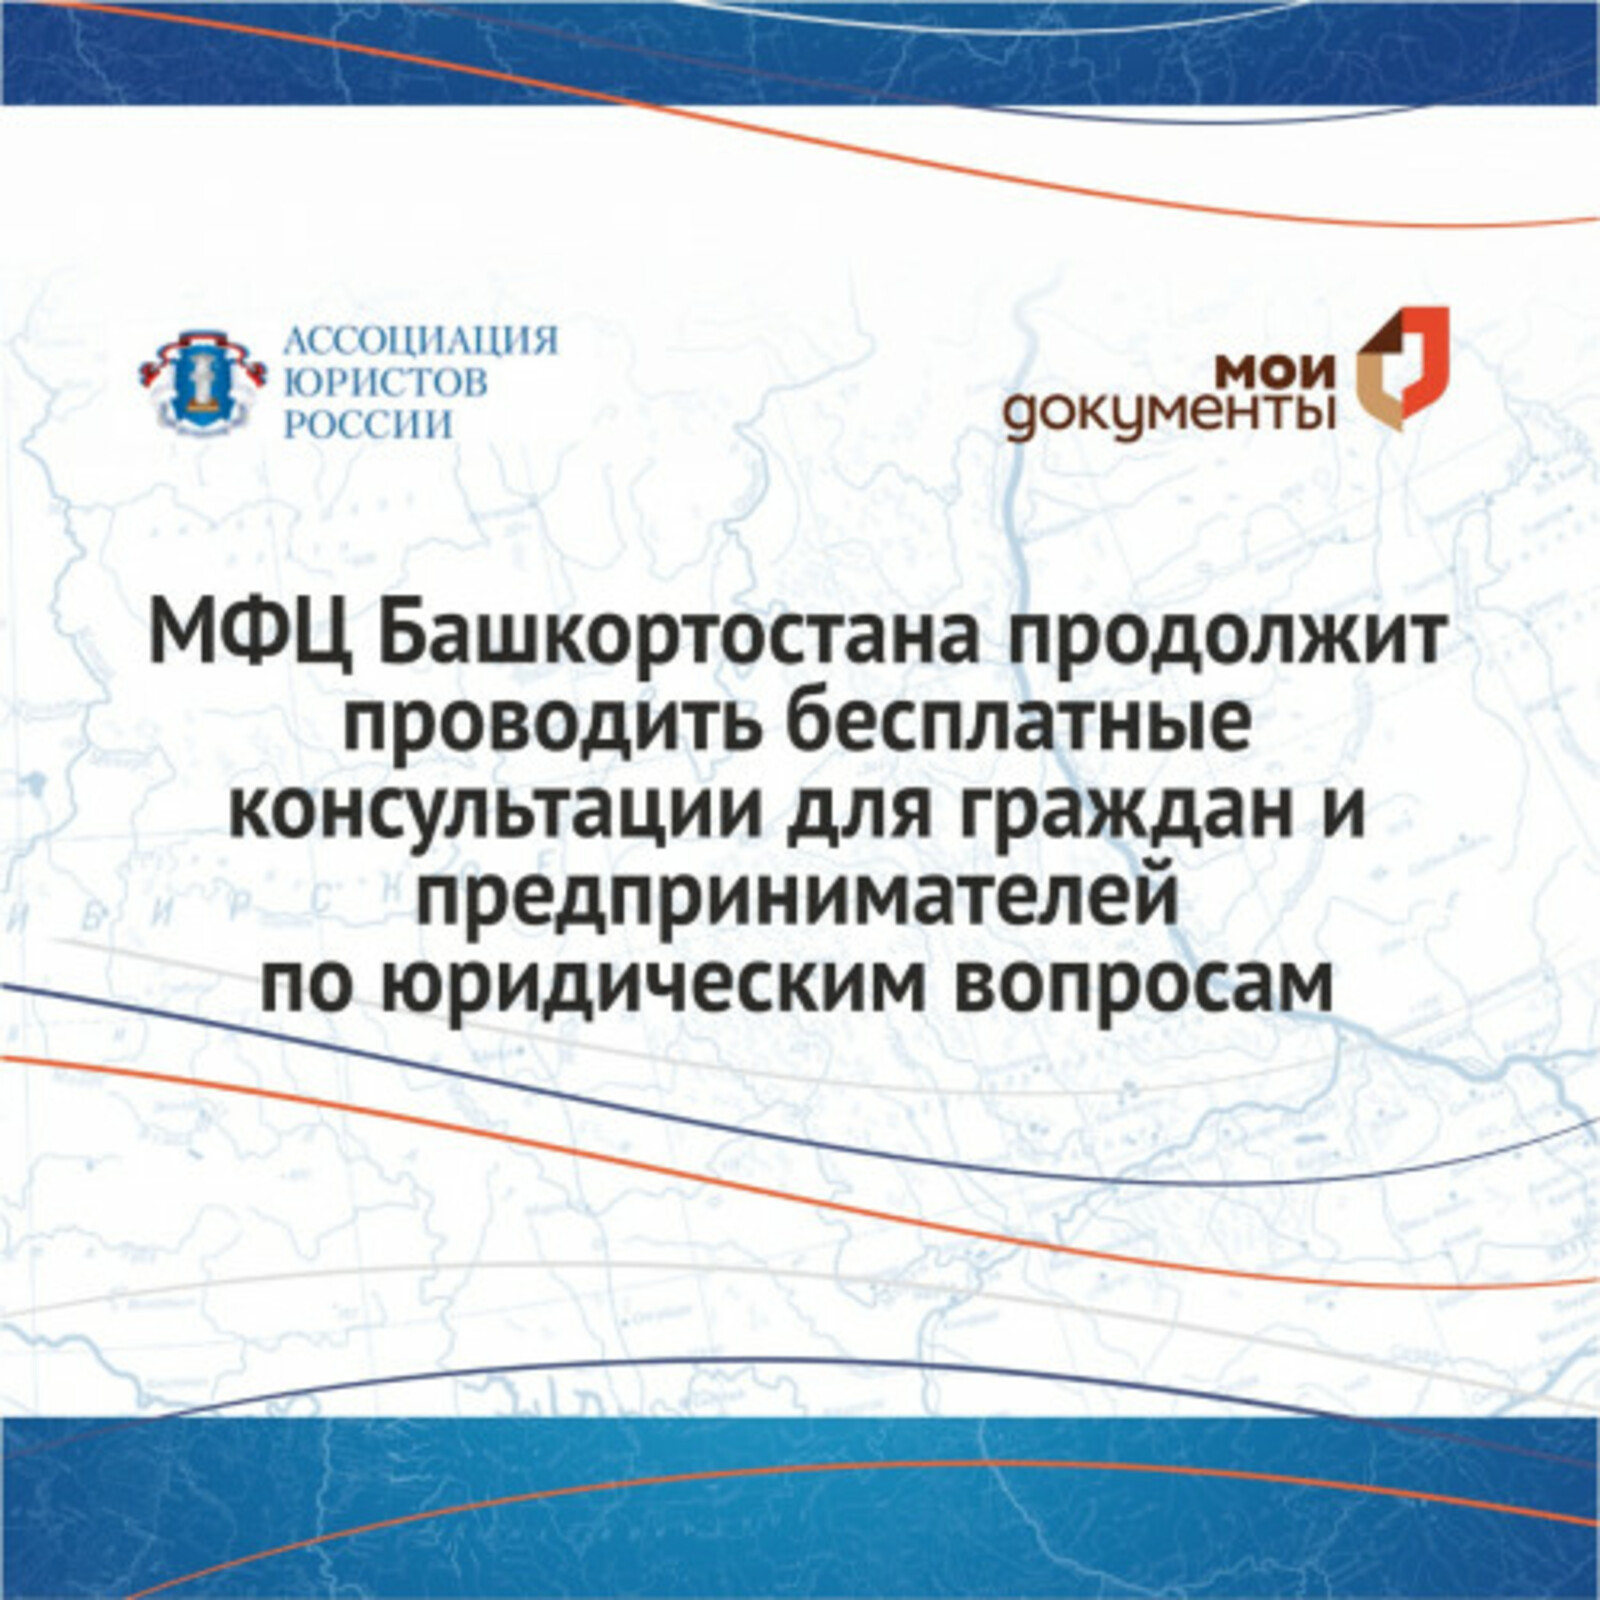 МФЦ Башкортостана продолжит проводить бесплатные консультации для граждан и предпринимателей по юридическим вопросам